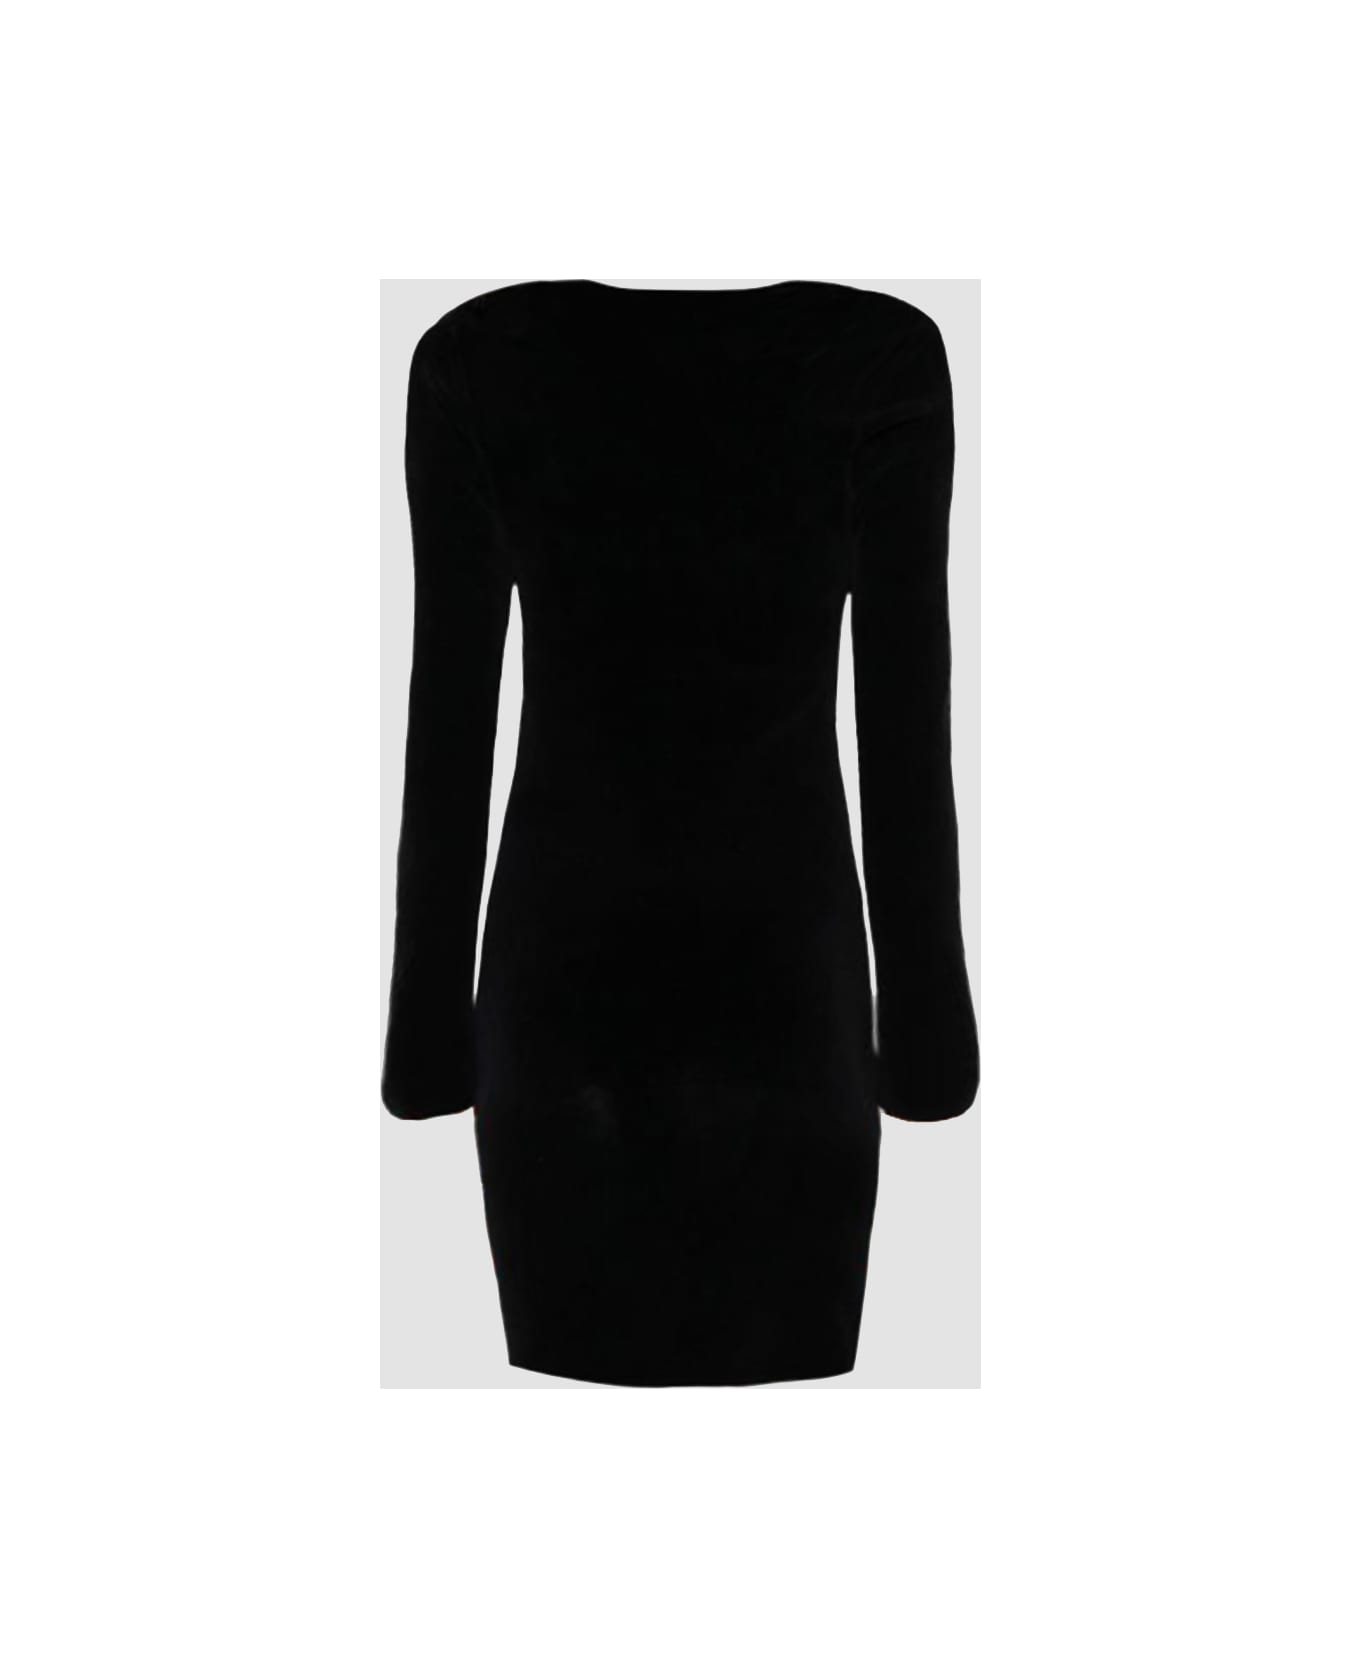 Alexander Wang Black Cotton Blend Logo Mini Dress - Black